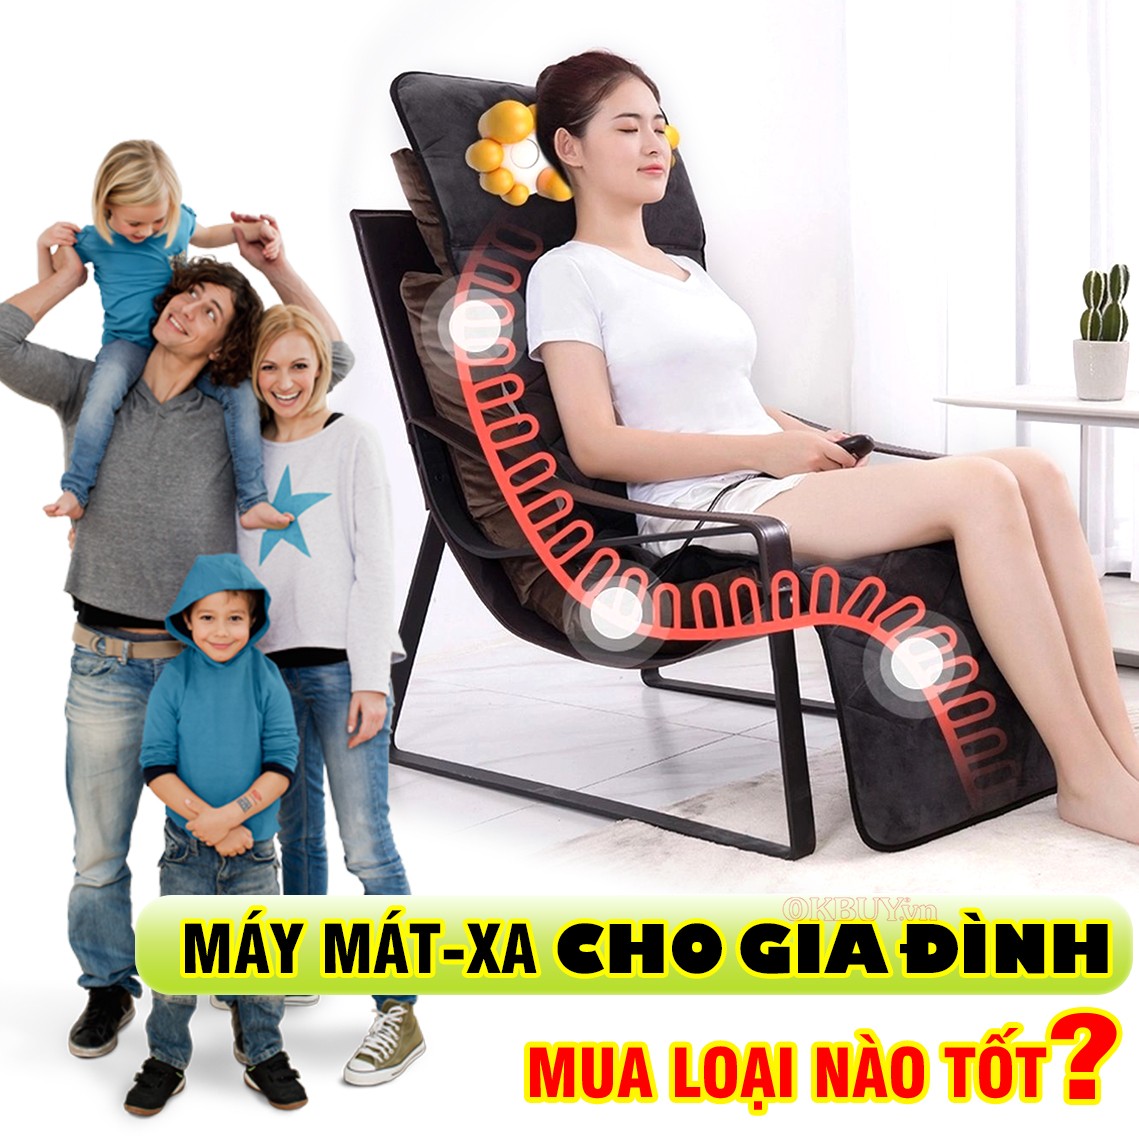 Máy massage nào chăm sóc sức khỏe cho cả gia đình?